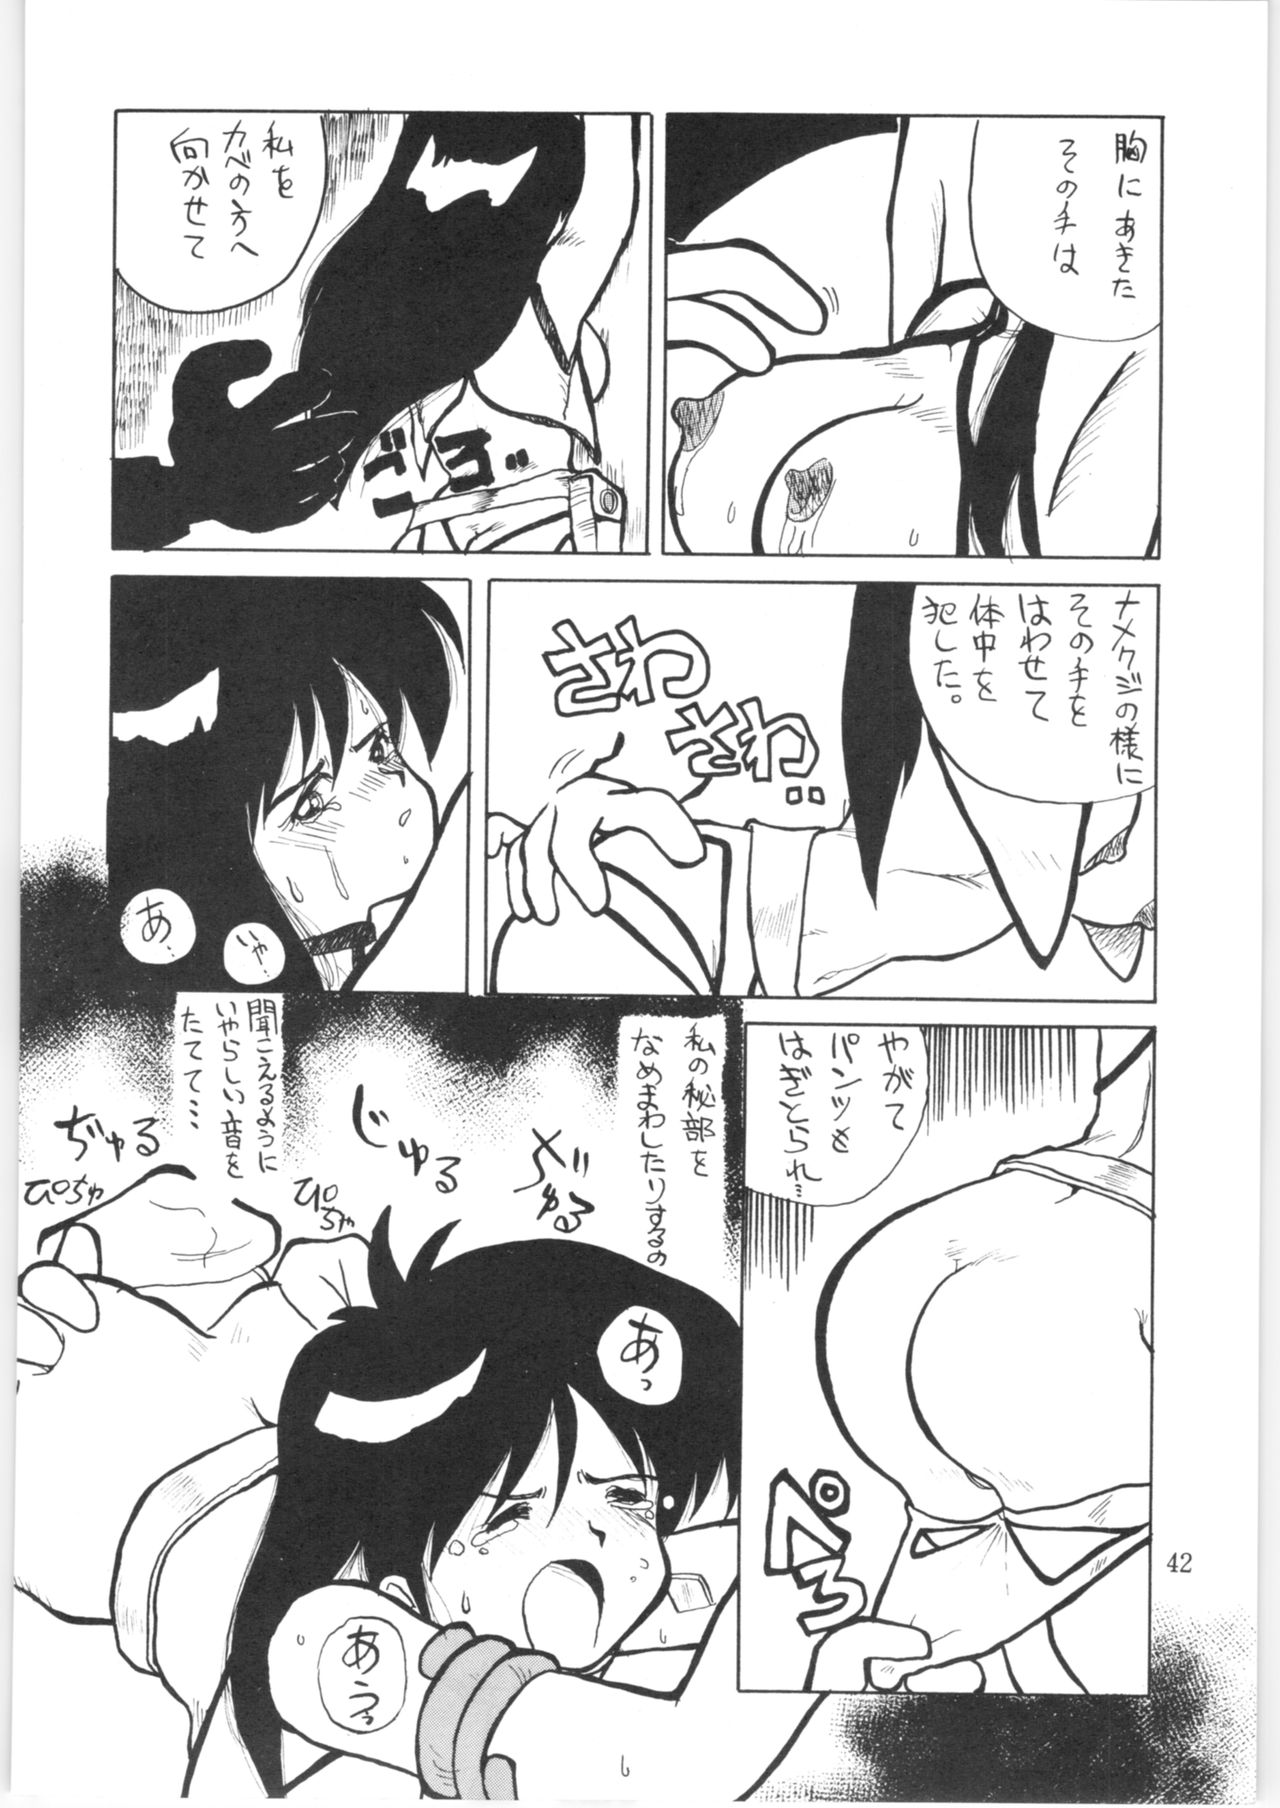 [Oideyasu Honpo (Various)] Yatte Yatte MISSION 2 (Various) page 41 full